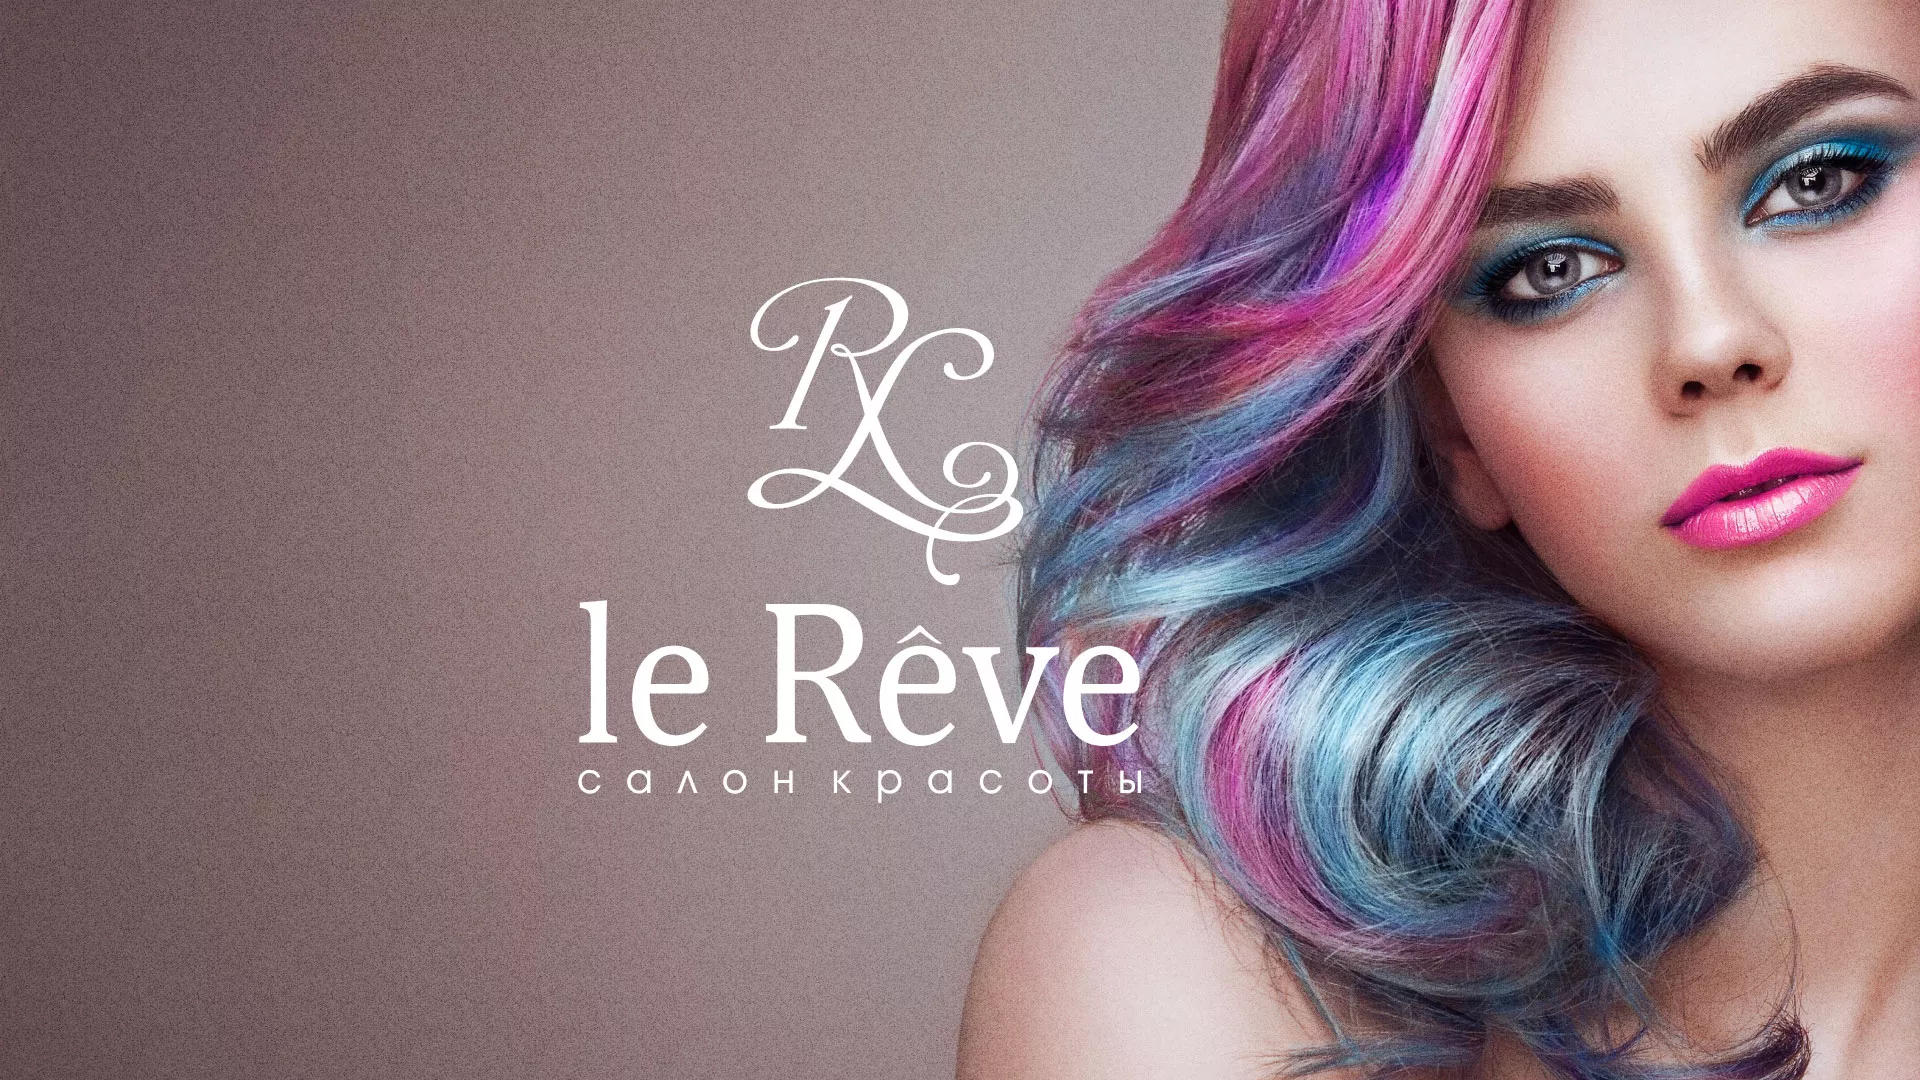 Создание сайта для салона красоты «Le Reve» в Костомукше